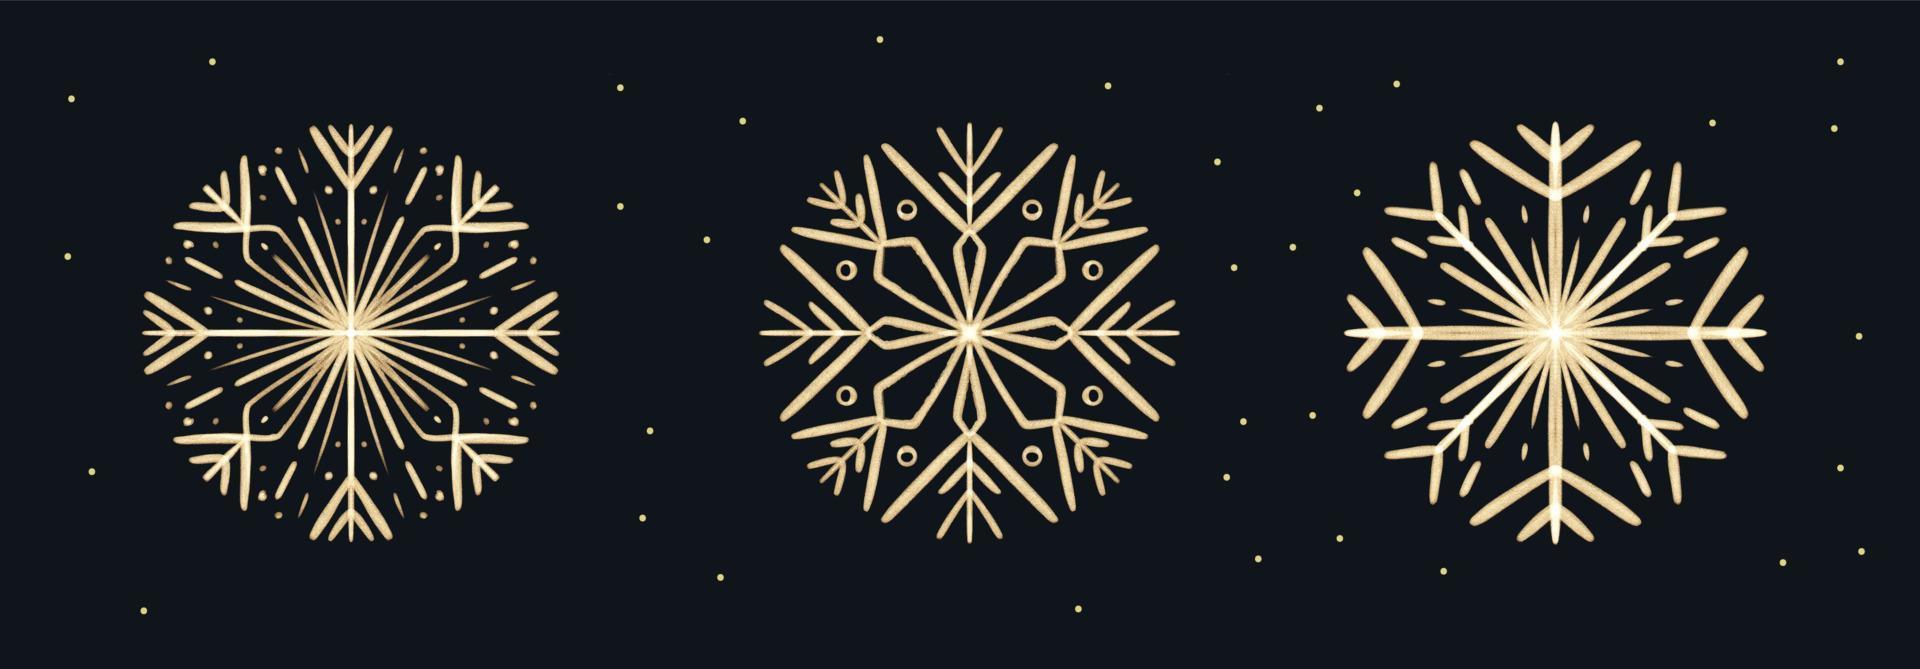 conjunto de flocos de neve de ouro desenhados à mão de pincelada para design de natal. elementos isolados de férias de inverno vetor